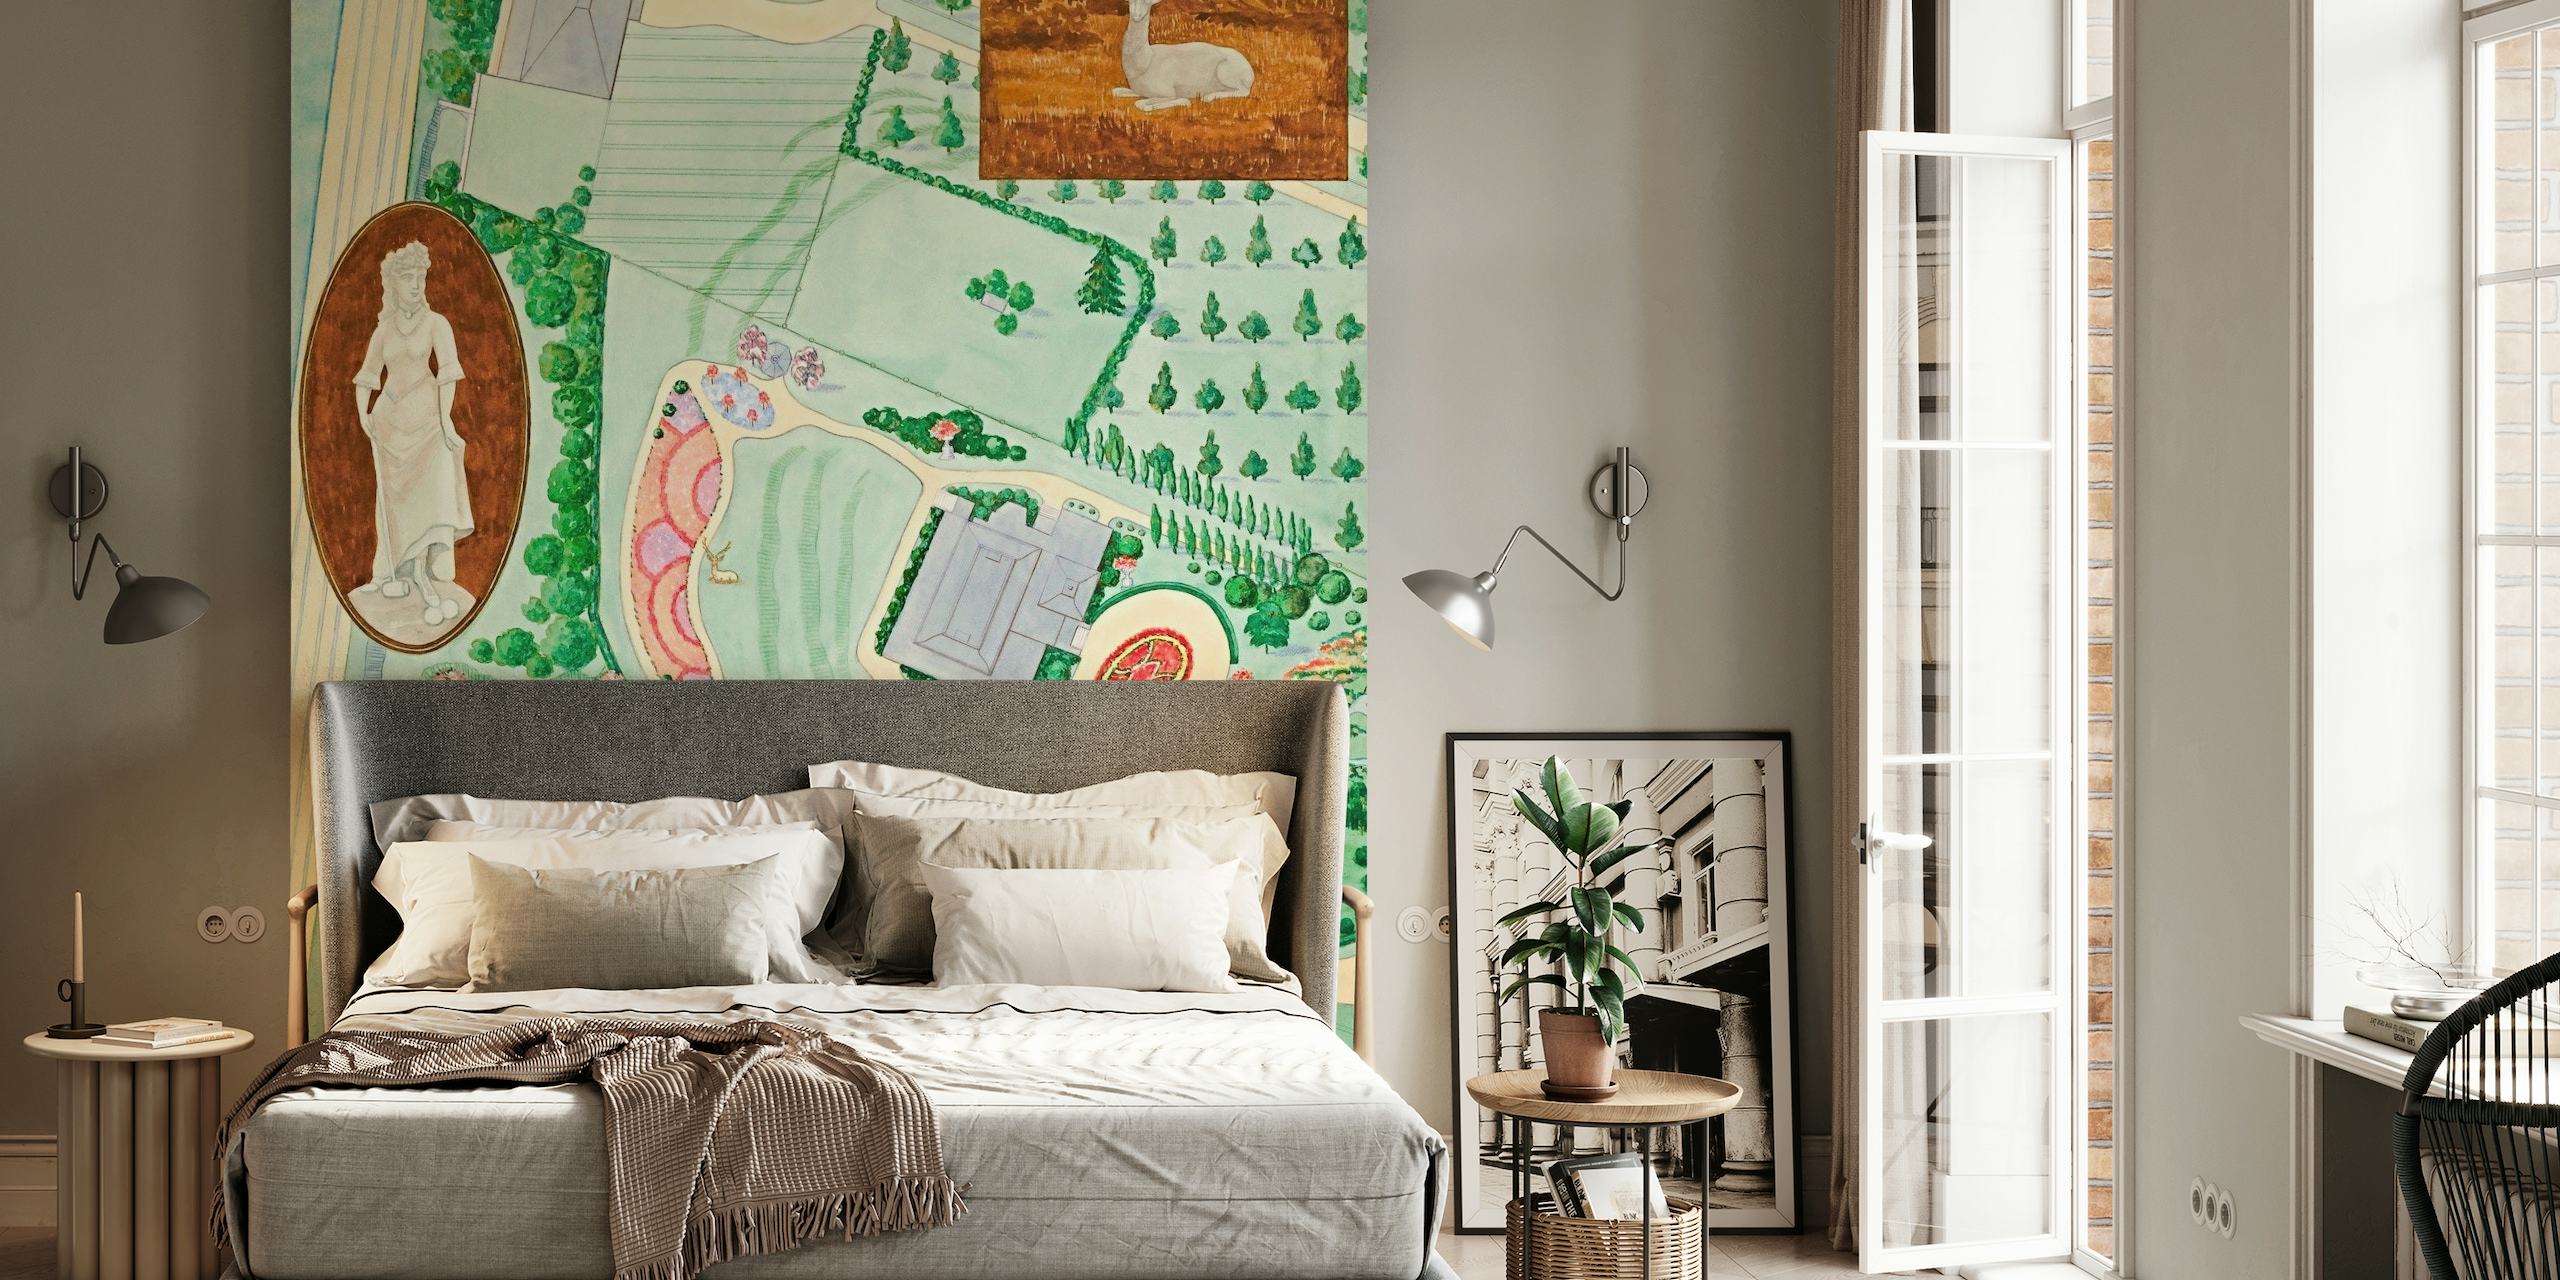 Illustratief fotobehang van een koninklijke tuin met verzorgde gazons, sierlijke paden en rustige natuurtaferelen in pastelkleuren